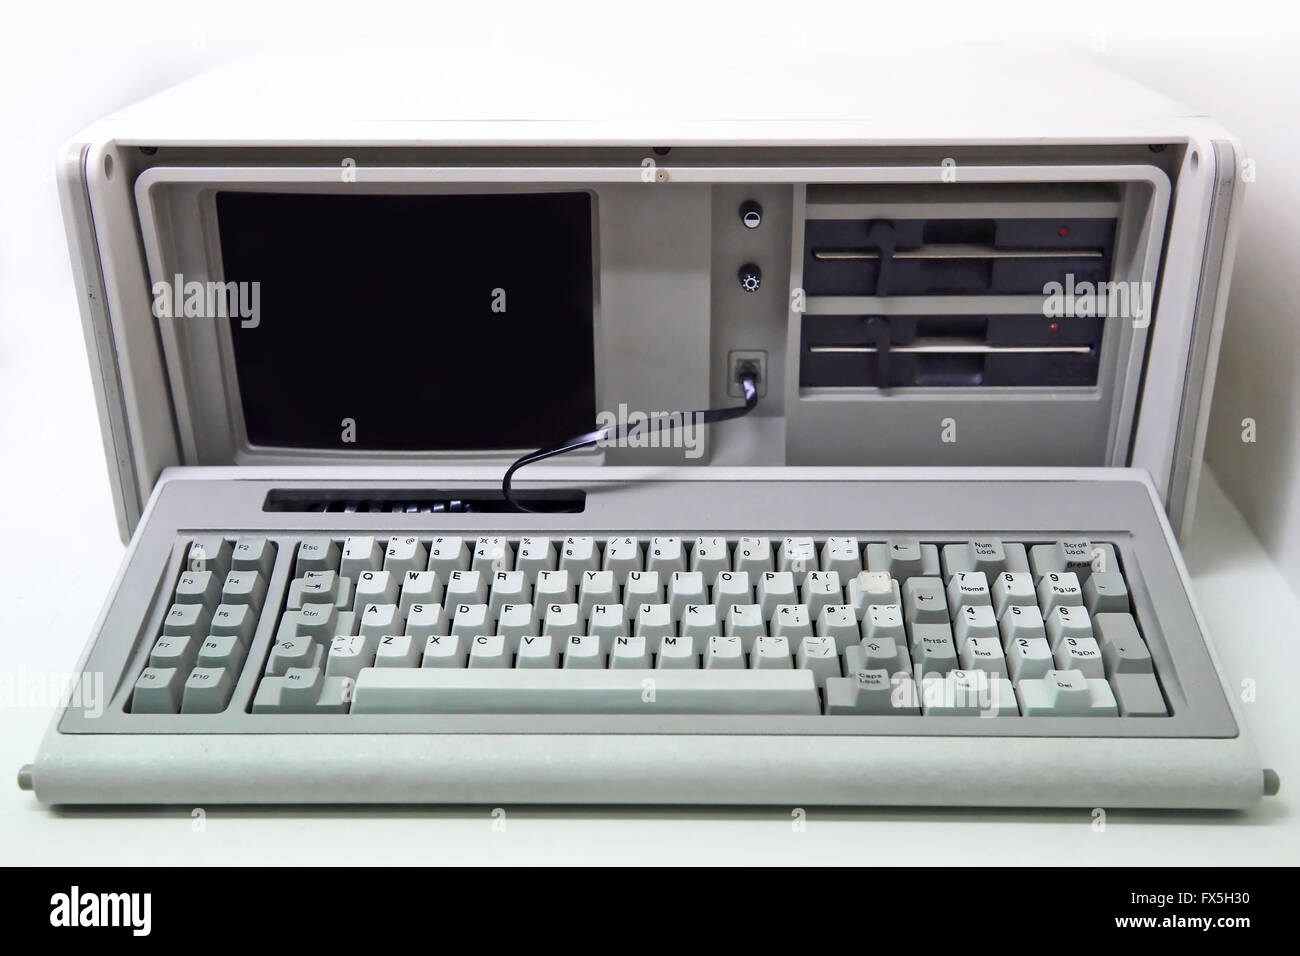 Blanco antiguo ordenador personal con unidades de disquete Foto de stock